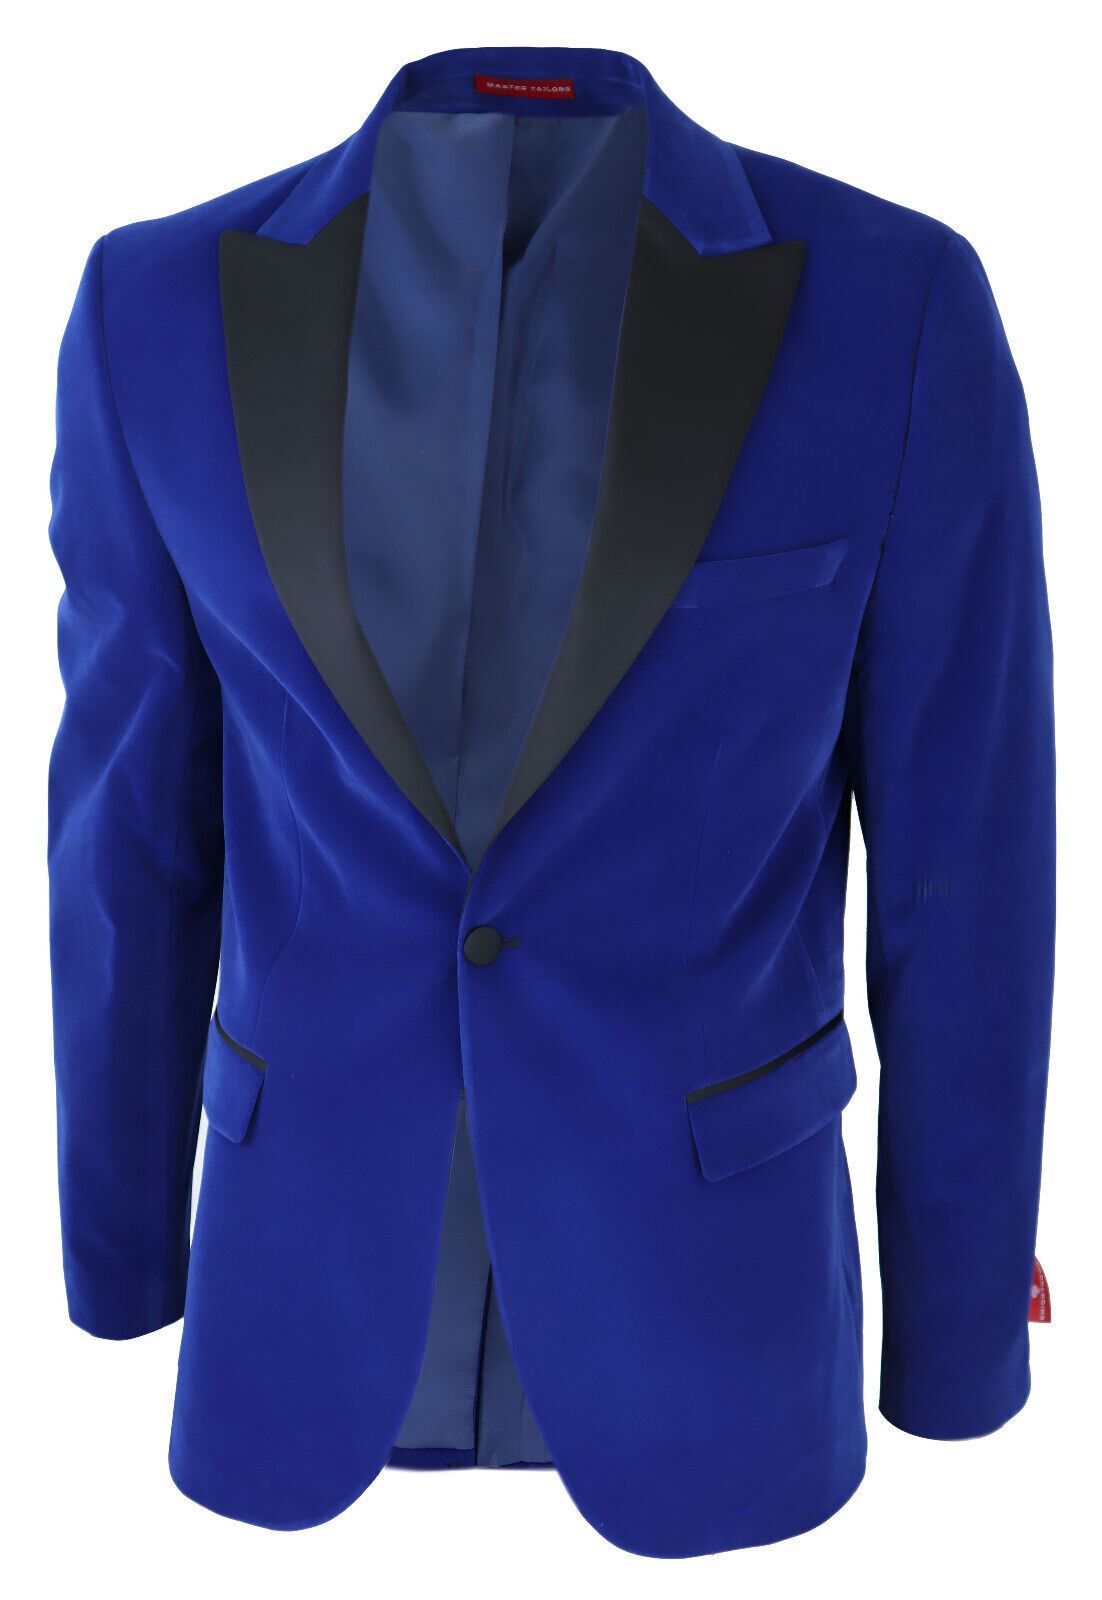 Mens Blue Velvet Dinner Tuxedo Suit Jacket Blazer - Upperclass Fashions 